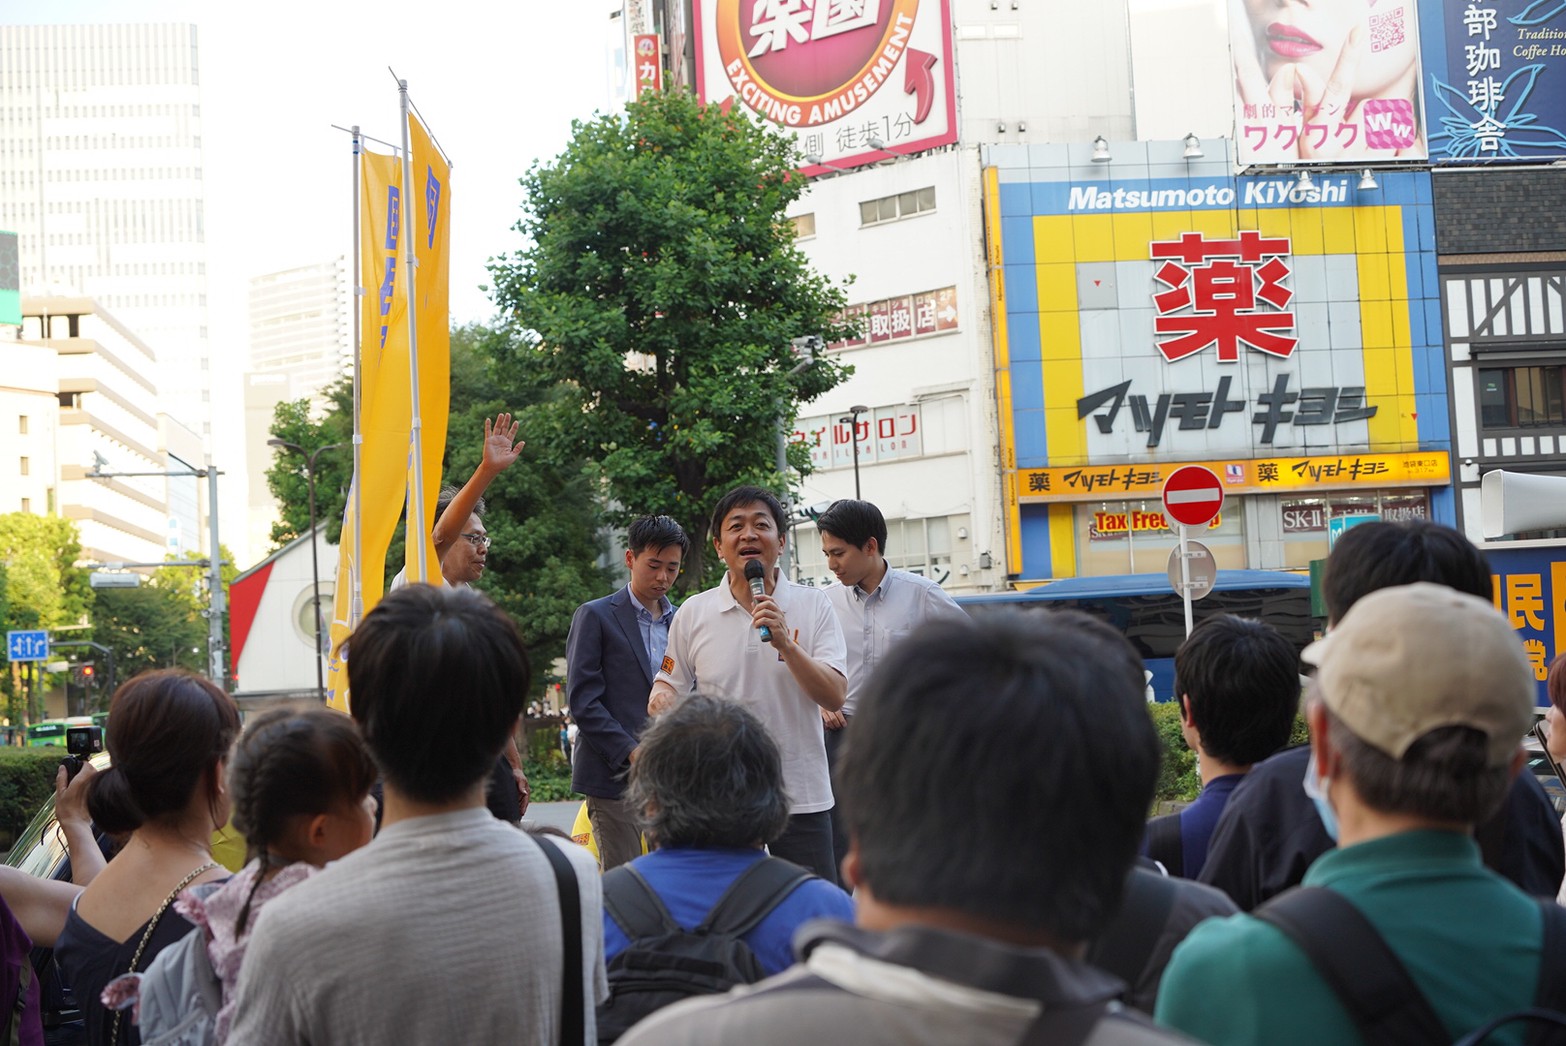 【東京】「皆様からの声を政策として実現したい」玉木代表が池袋駅前で演説